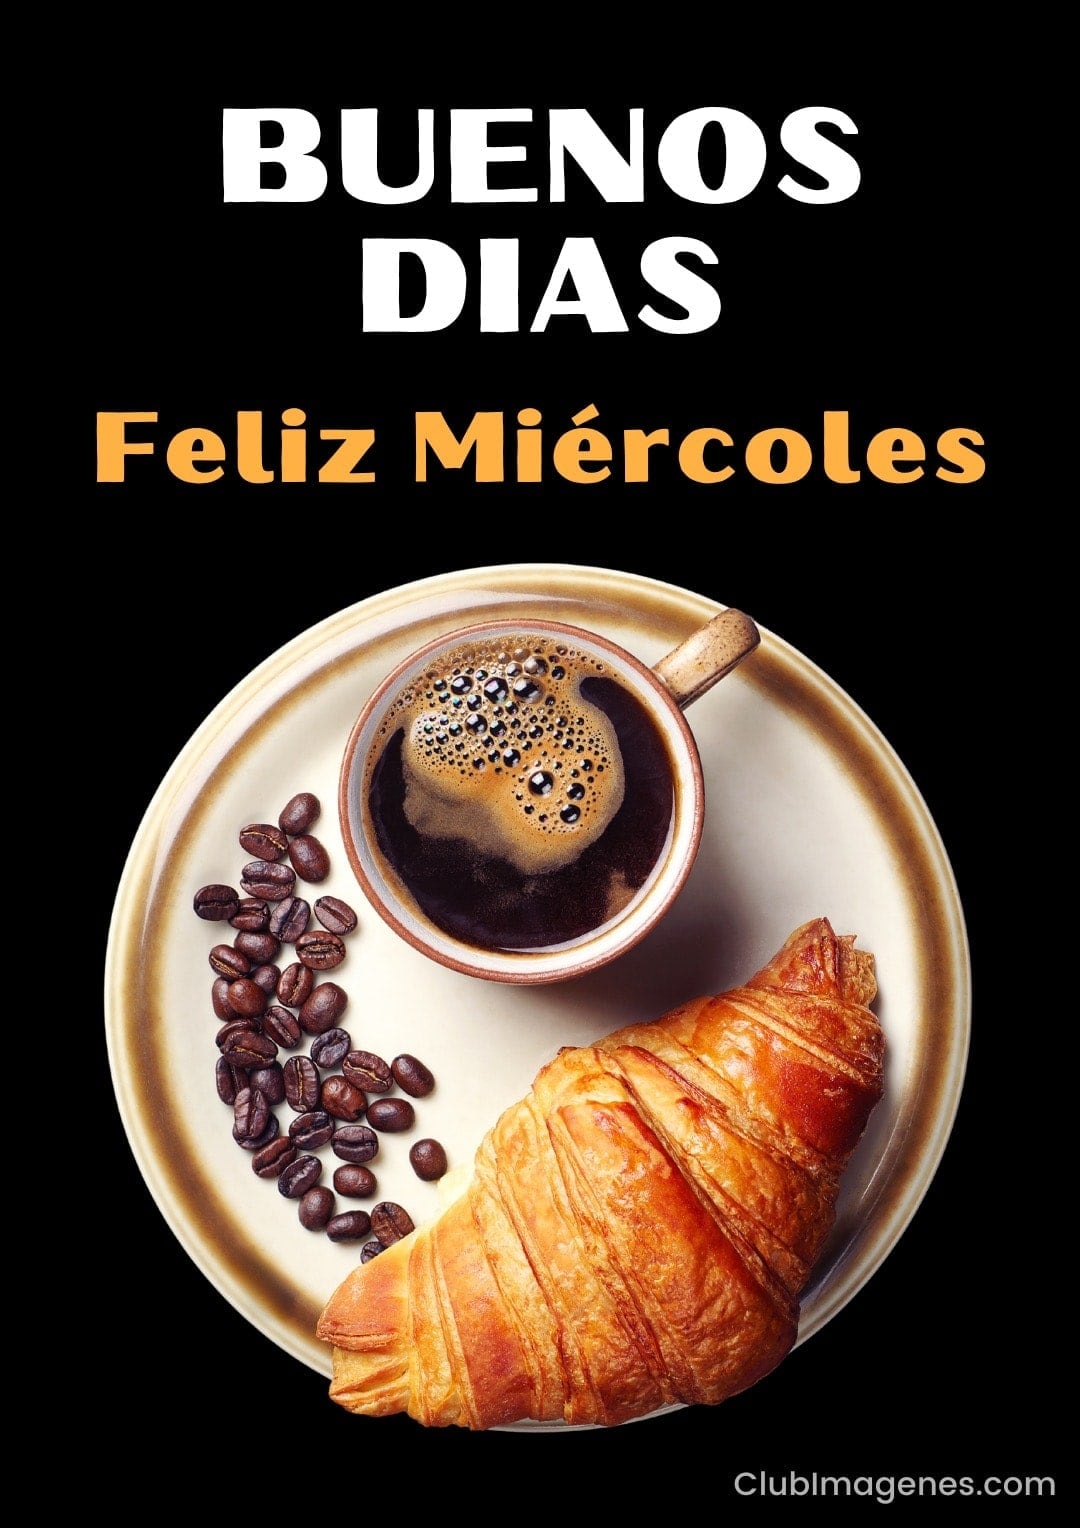 Taza de café con crema y croissant en plato, acompañados de granos de café, con texto 'Buenos días Feliz Miércoles'